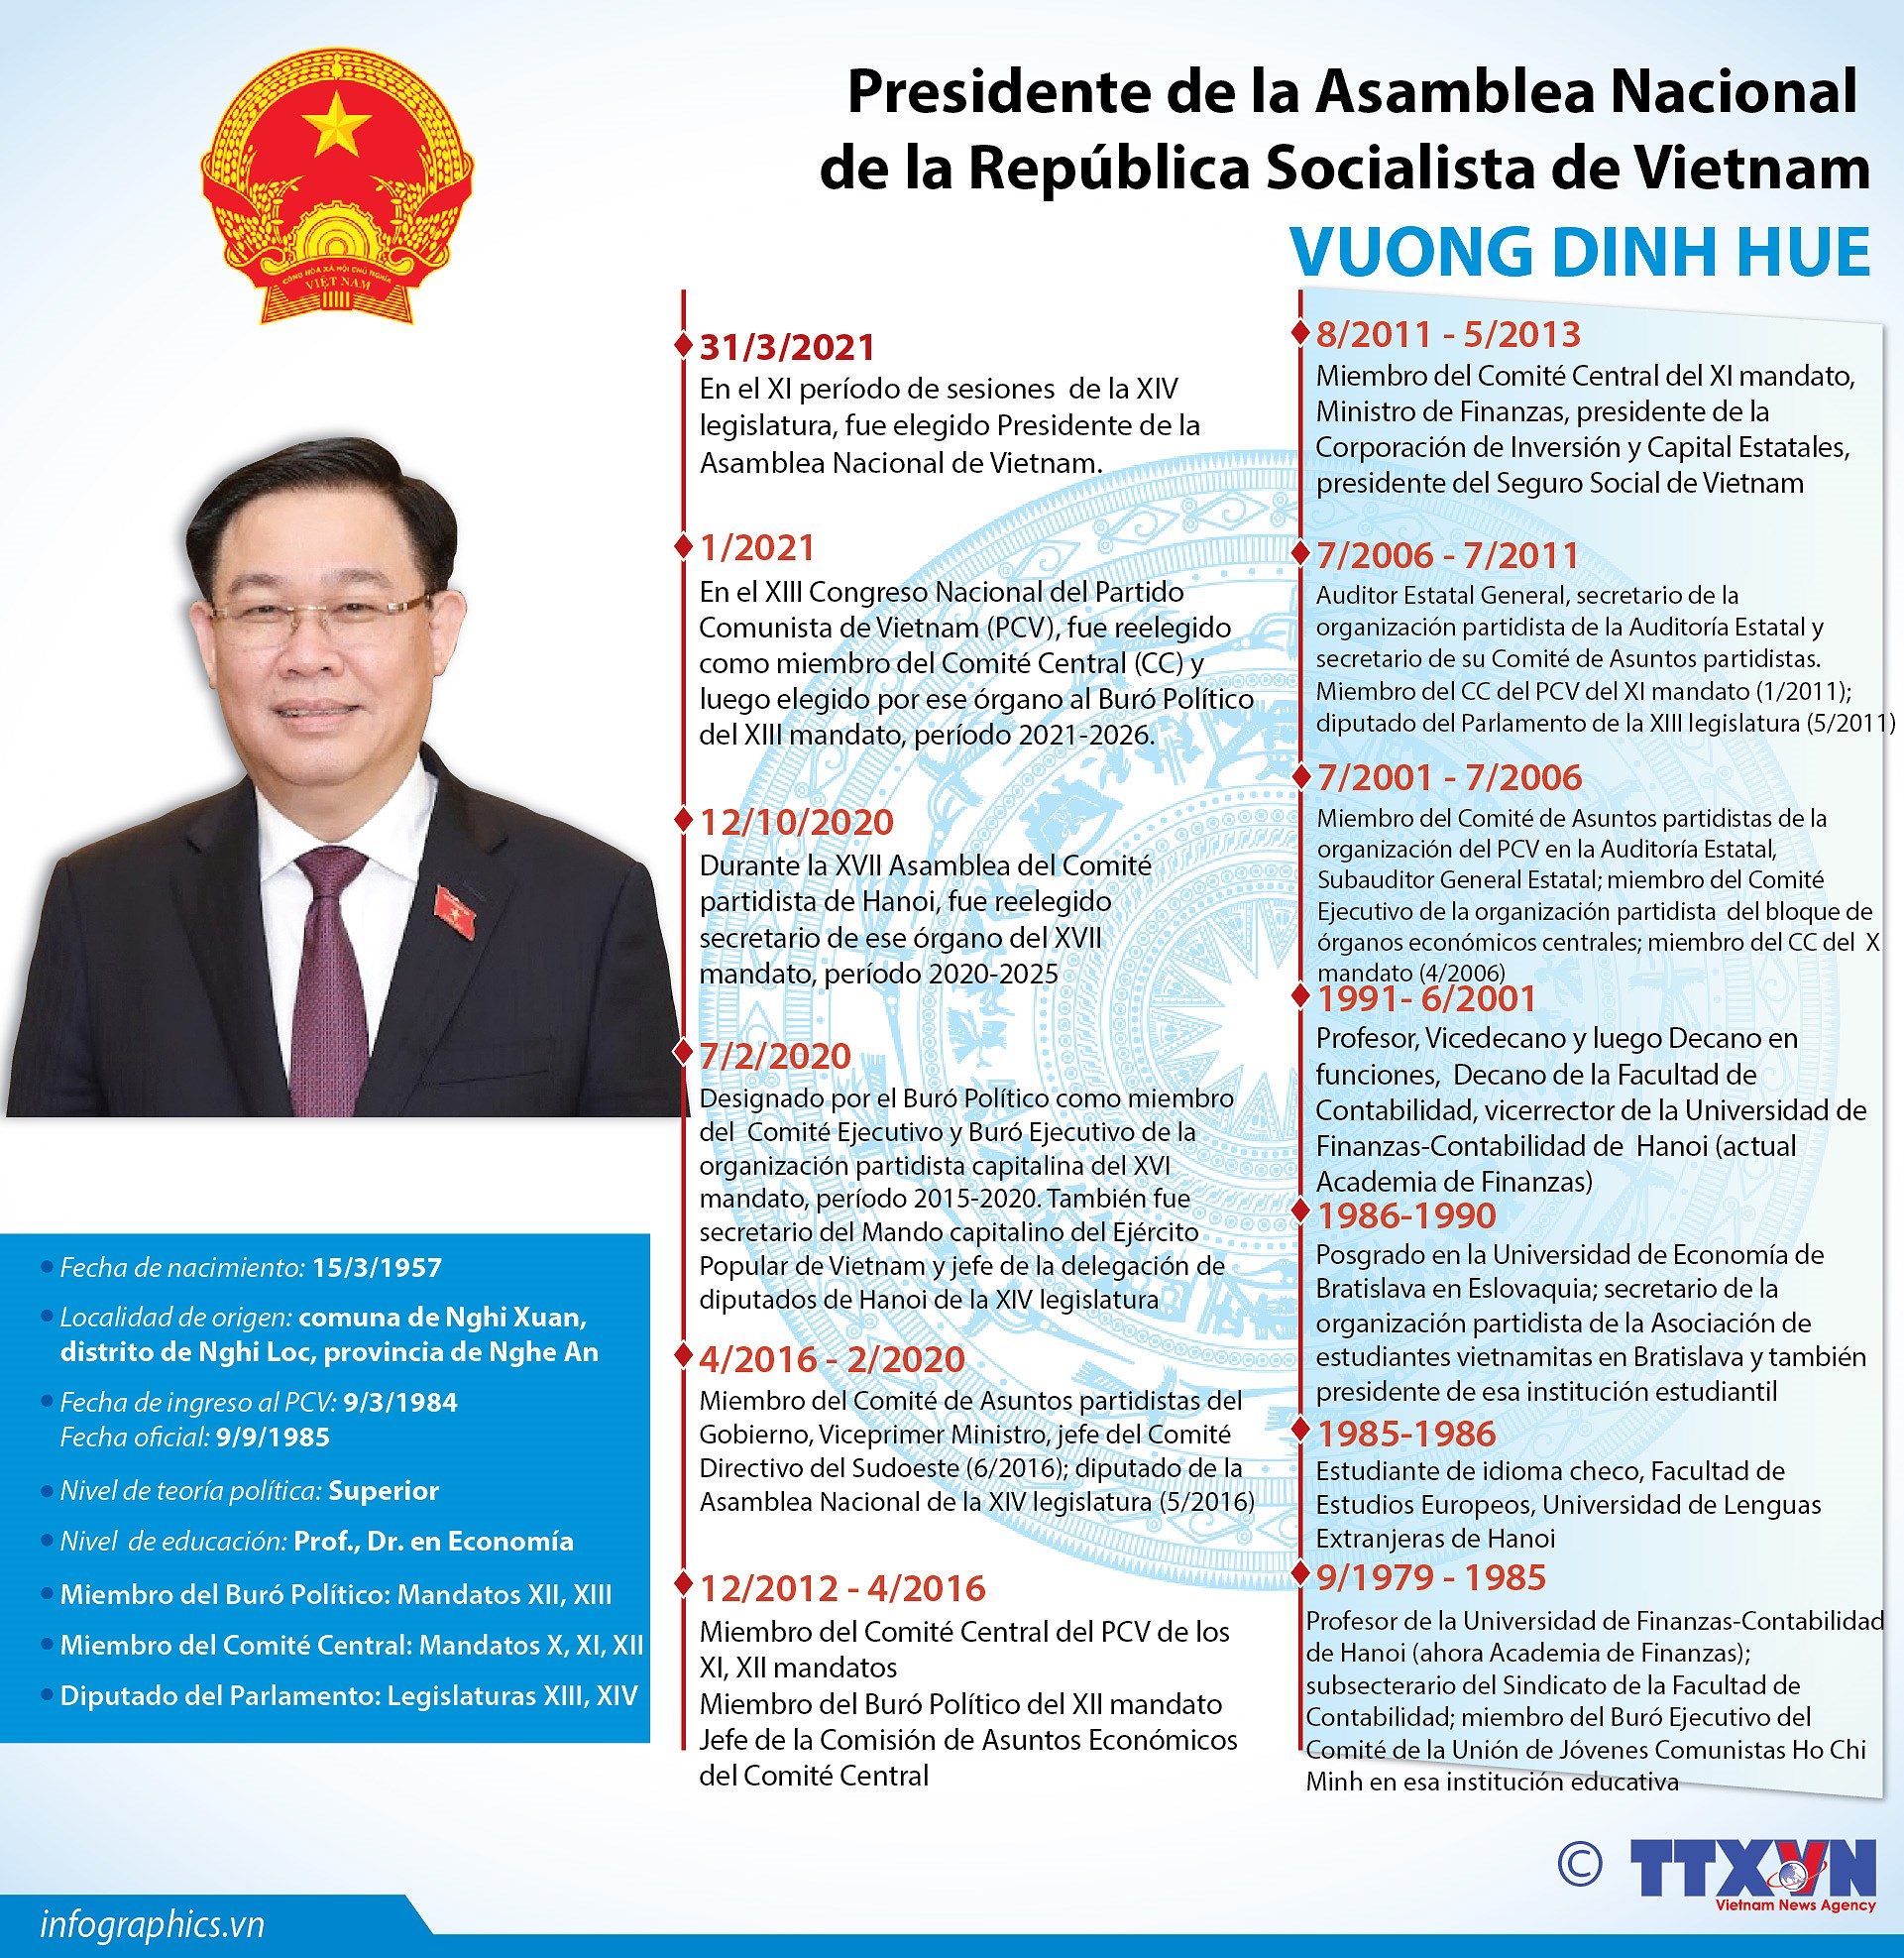 Vuong Dinh Hue, nuevo presidente de la Asamblea Nacional de Vietnam hinh anh 1